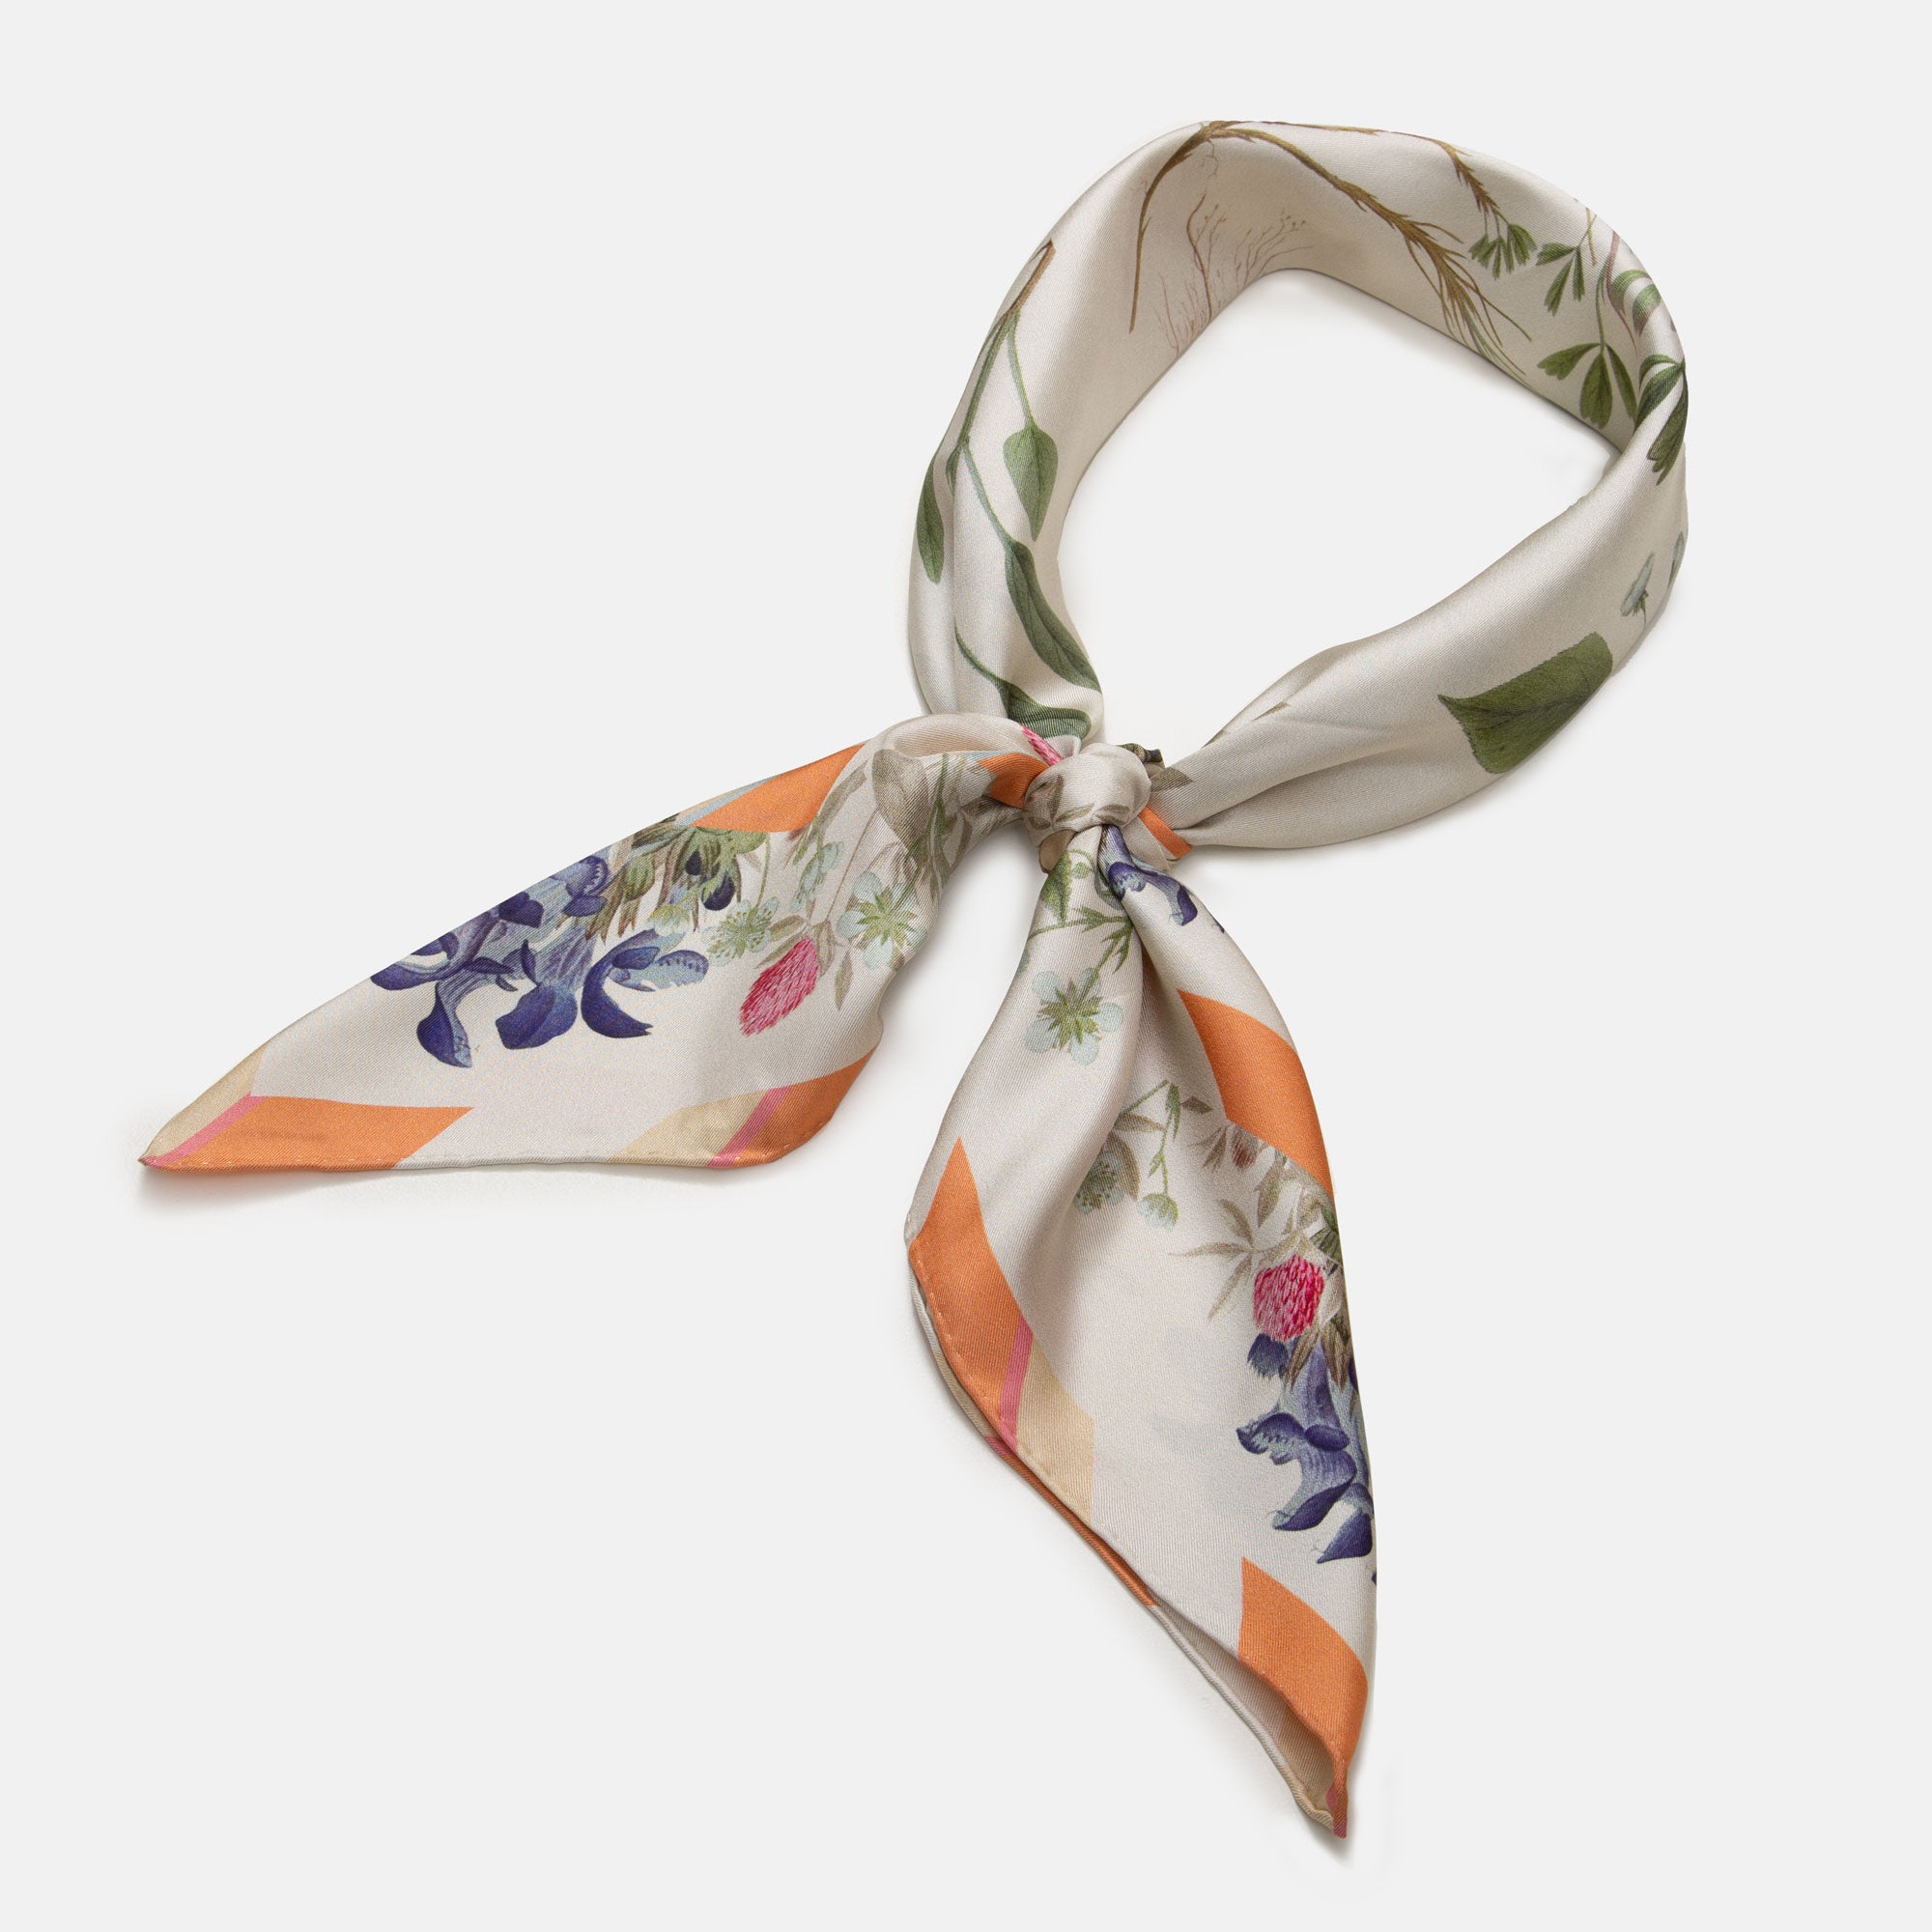 Flowering Summer Garden silk scarf